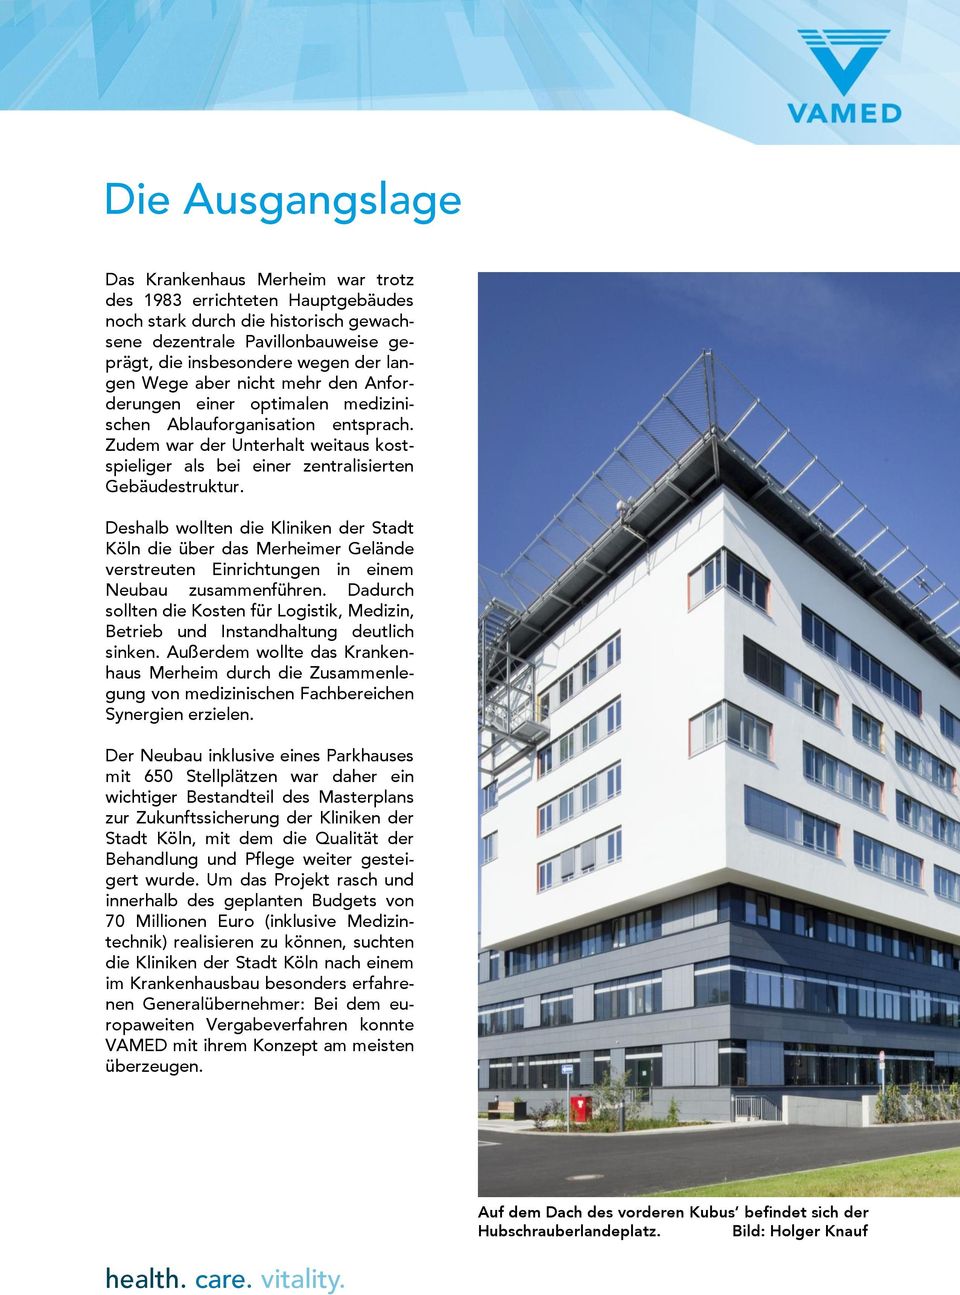 Deshalb wollten die Kliniken der Stadt Köln die über das Merheimer Gelände verstreuten Einrichtungen in einem Neubau zusammenführen.